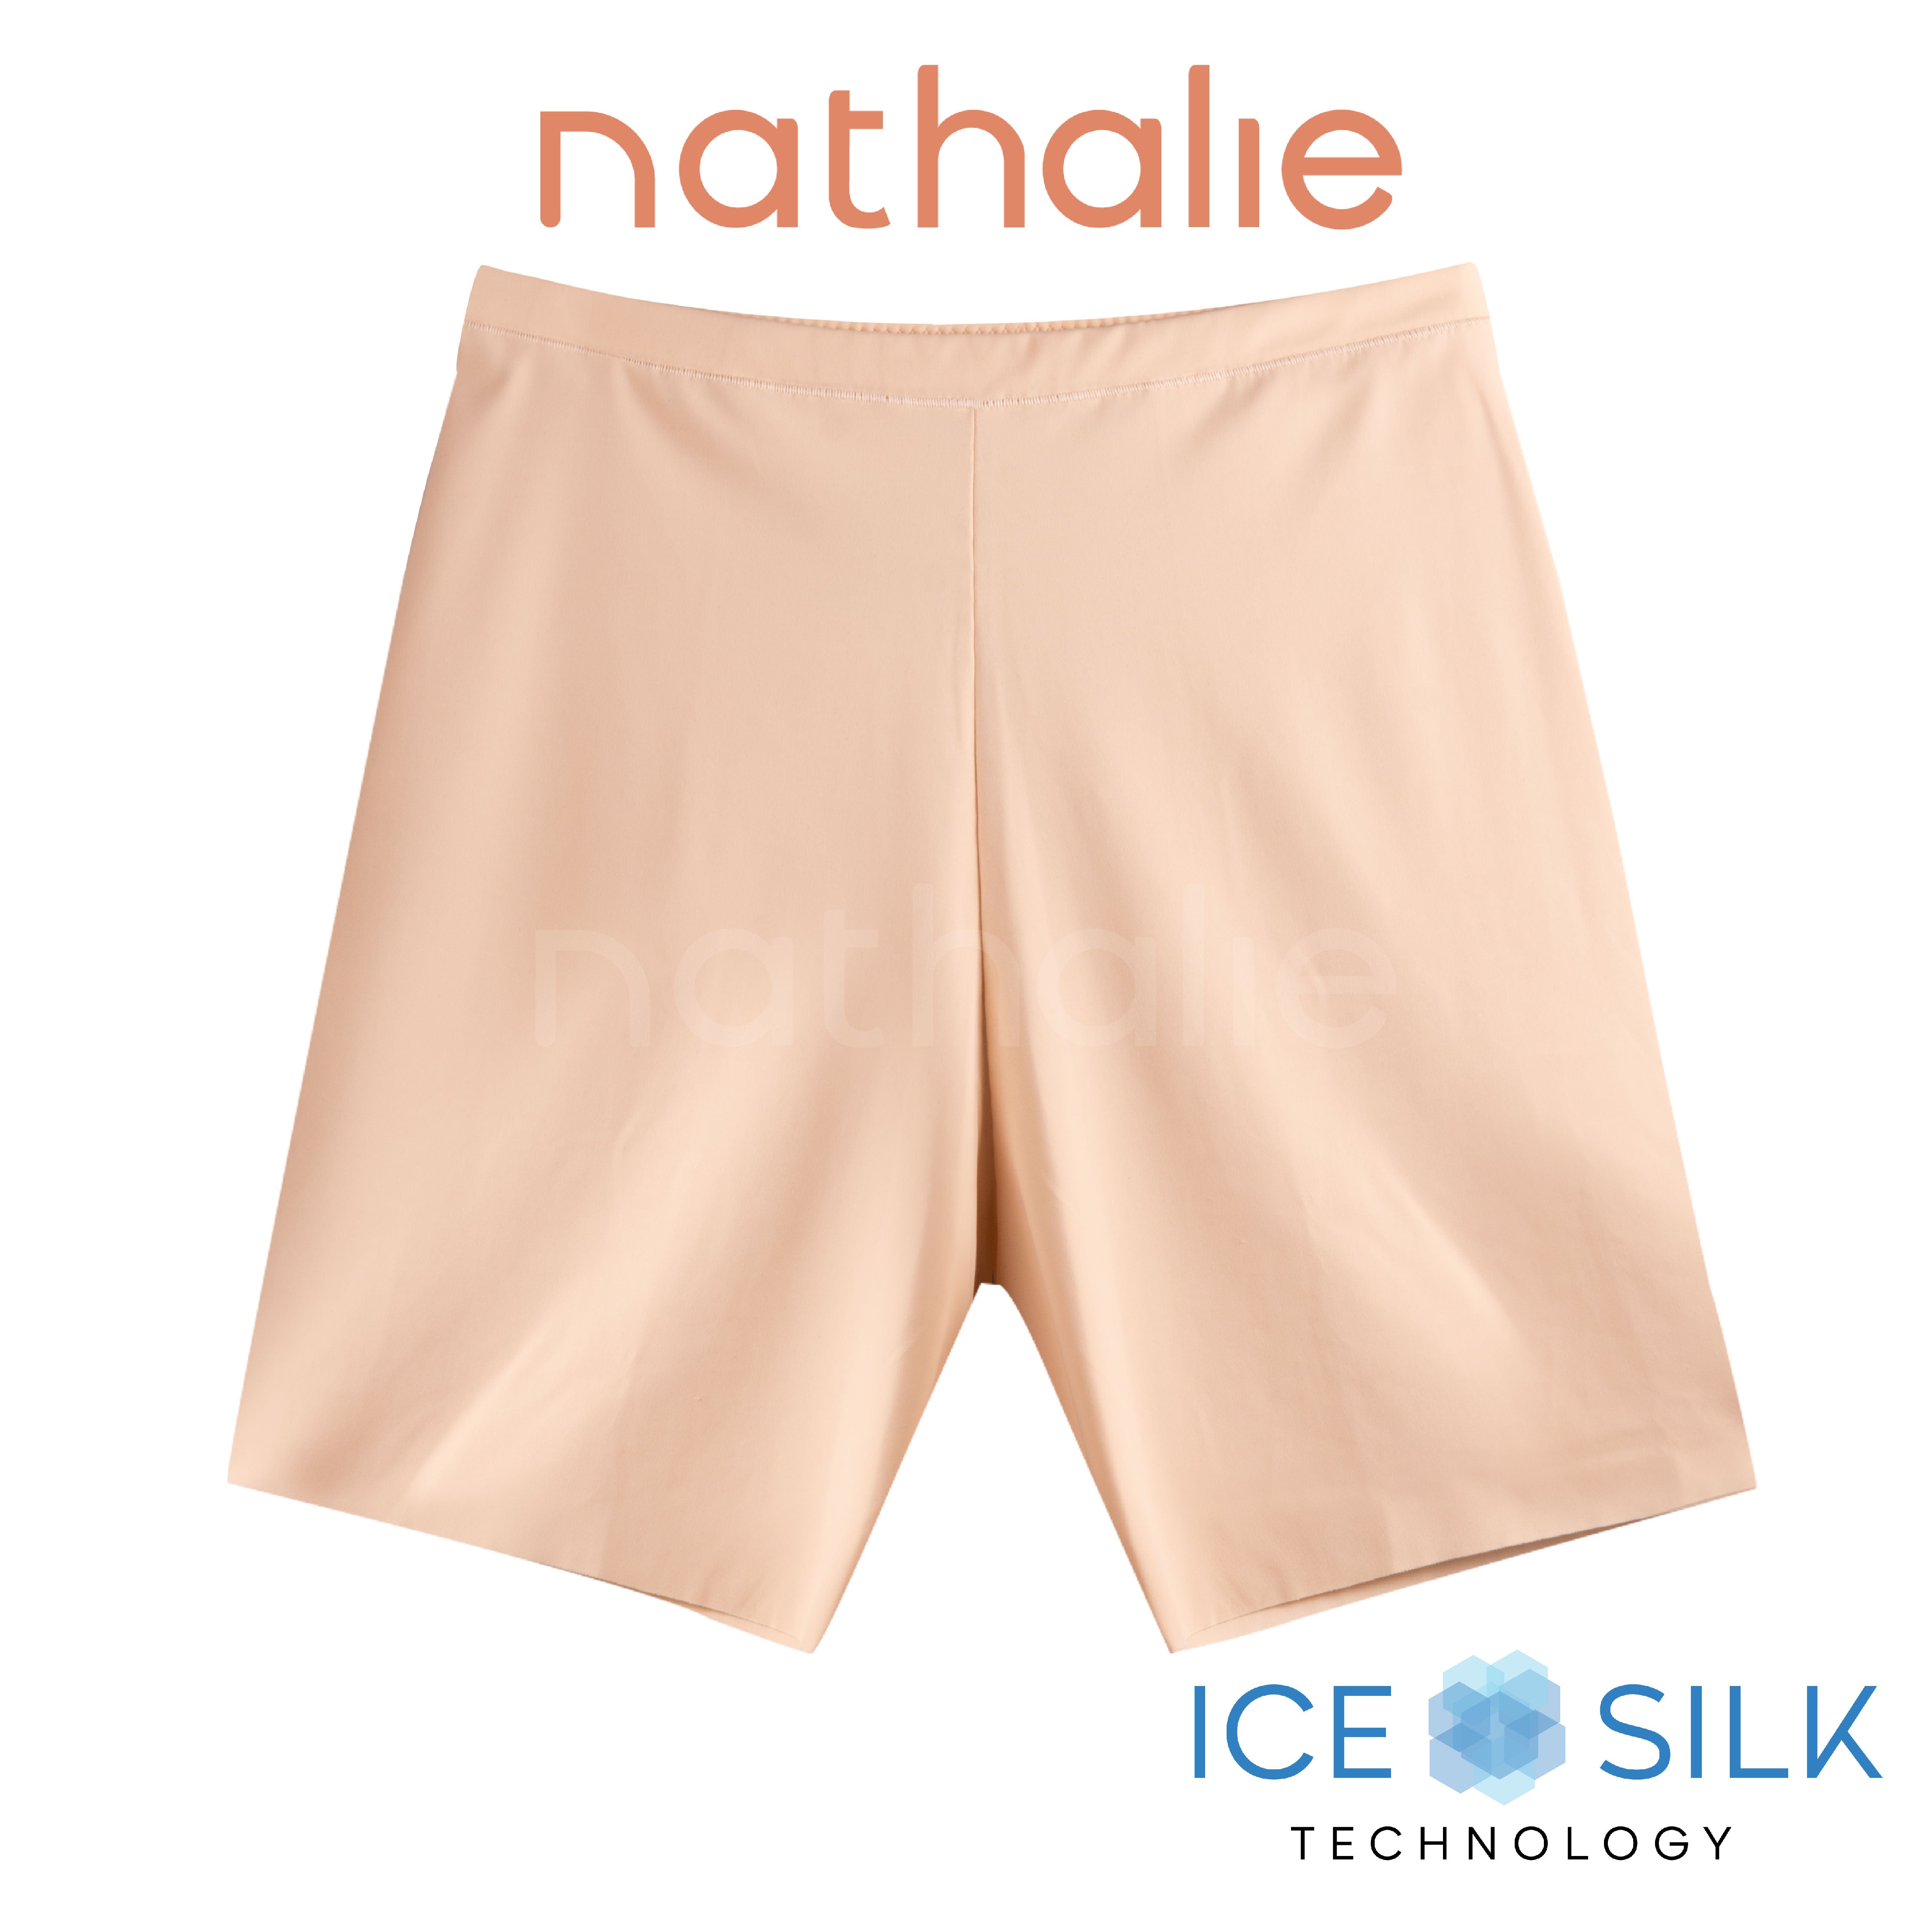 Nathalie Short Pants Wanita Ice Silk Celana Ketat Strit Cewek Nylon 1 Pcs NTC 3439